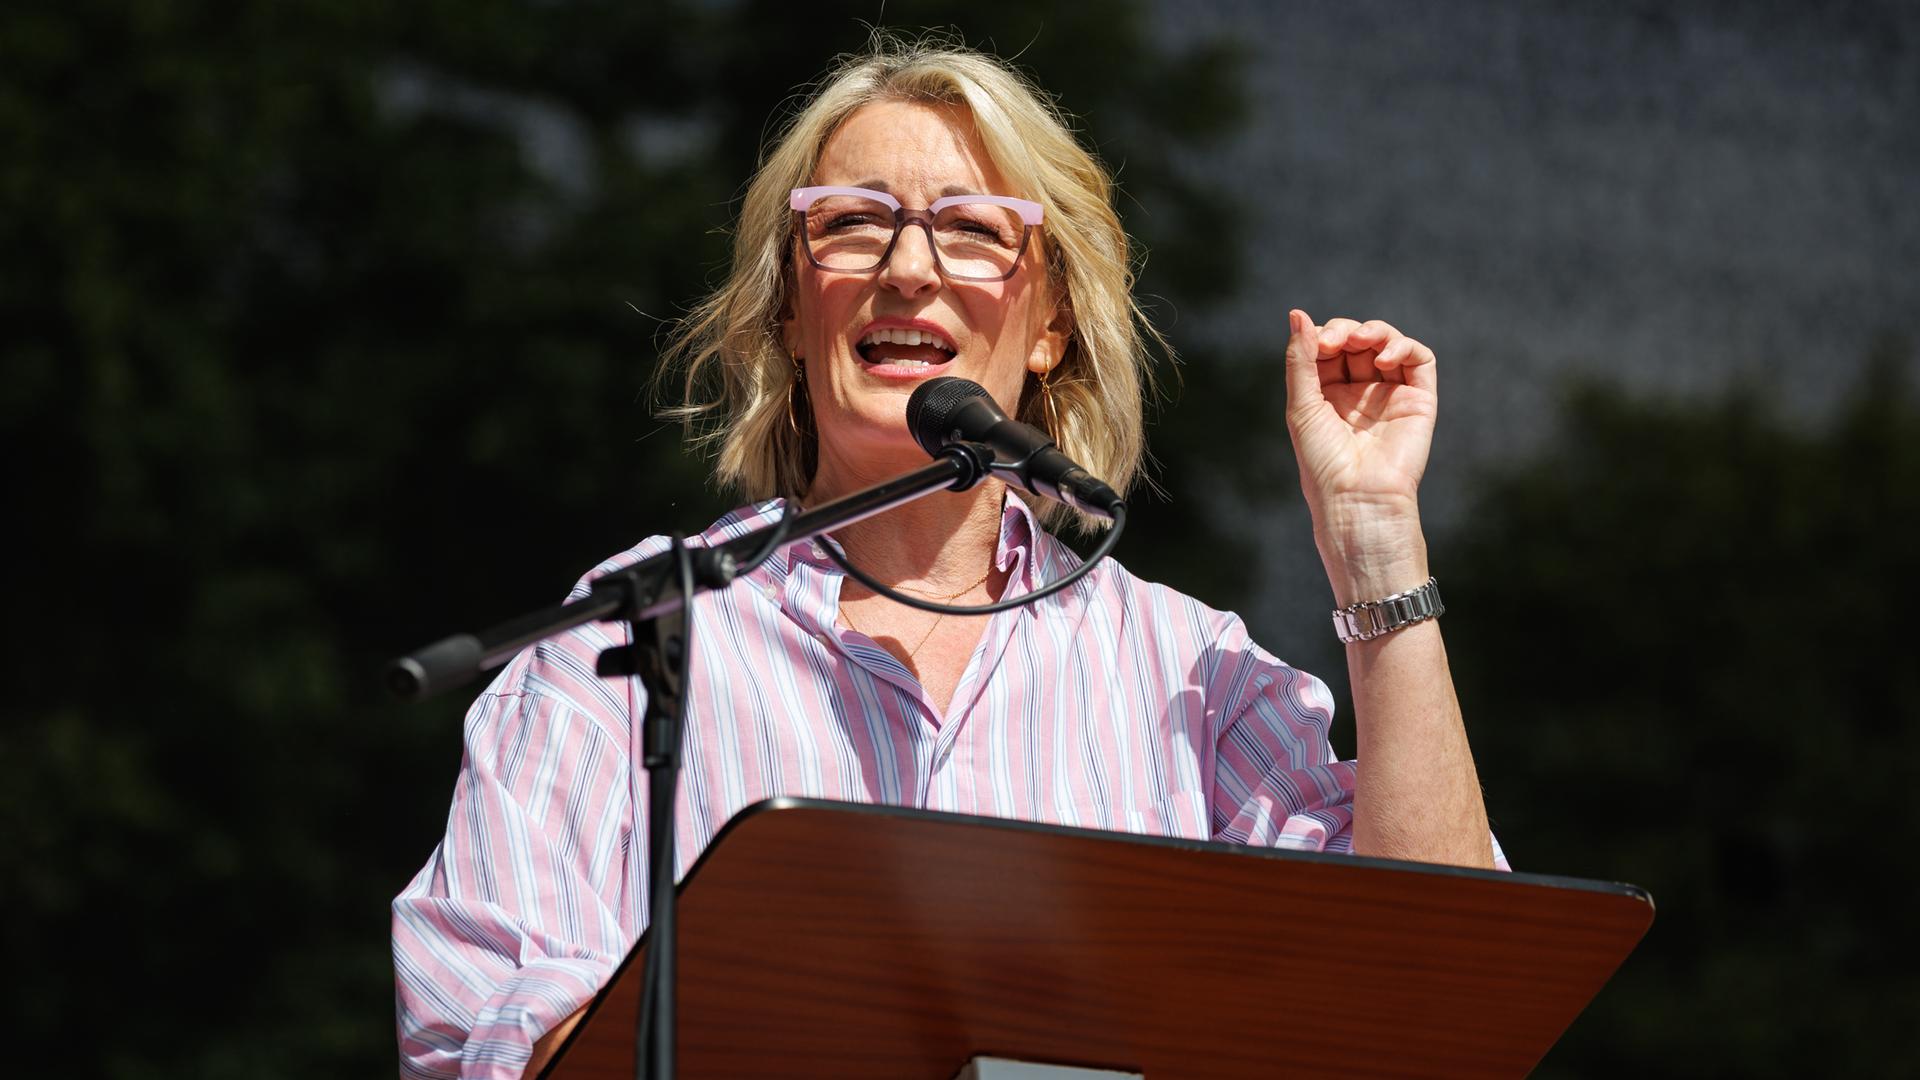 Kabarettistin Monika Gruber spricht im Juni 2023 bei einer Demonstration gegen die Klima-Politik der Ampelregierung unter dem Motto "Stoppt die Heizungsideologie".